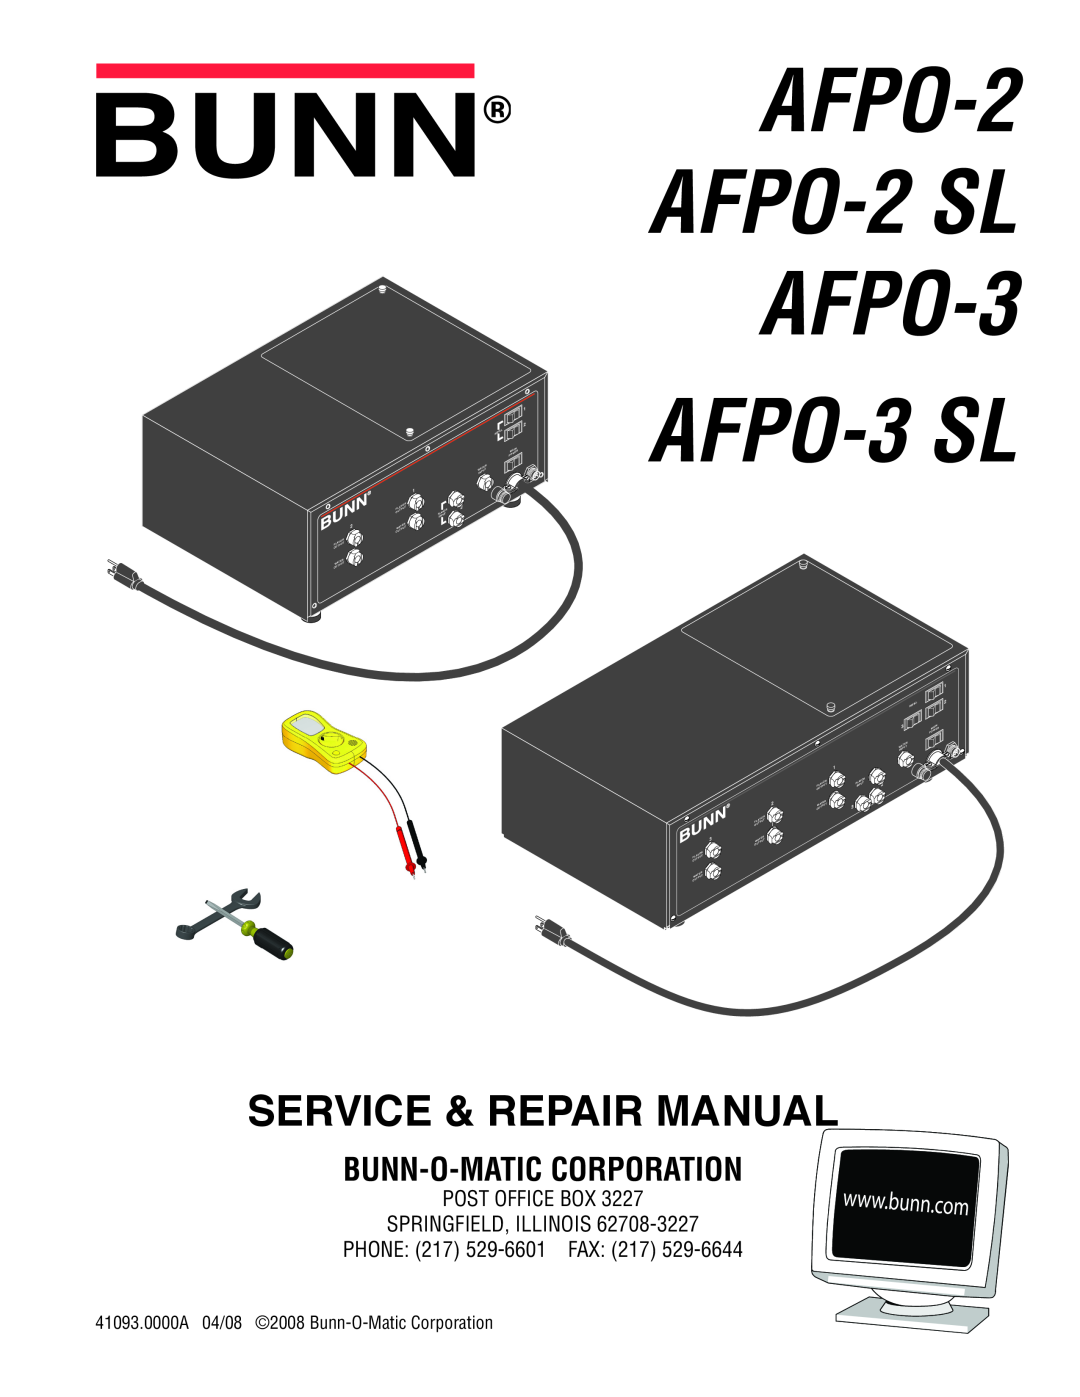 Bunn AFPO-3 SL manual Bunn-O-Matic Corporation, AFPO-2 AFPO-2 SL AFPO-3, Service & Repair Manual 